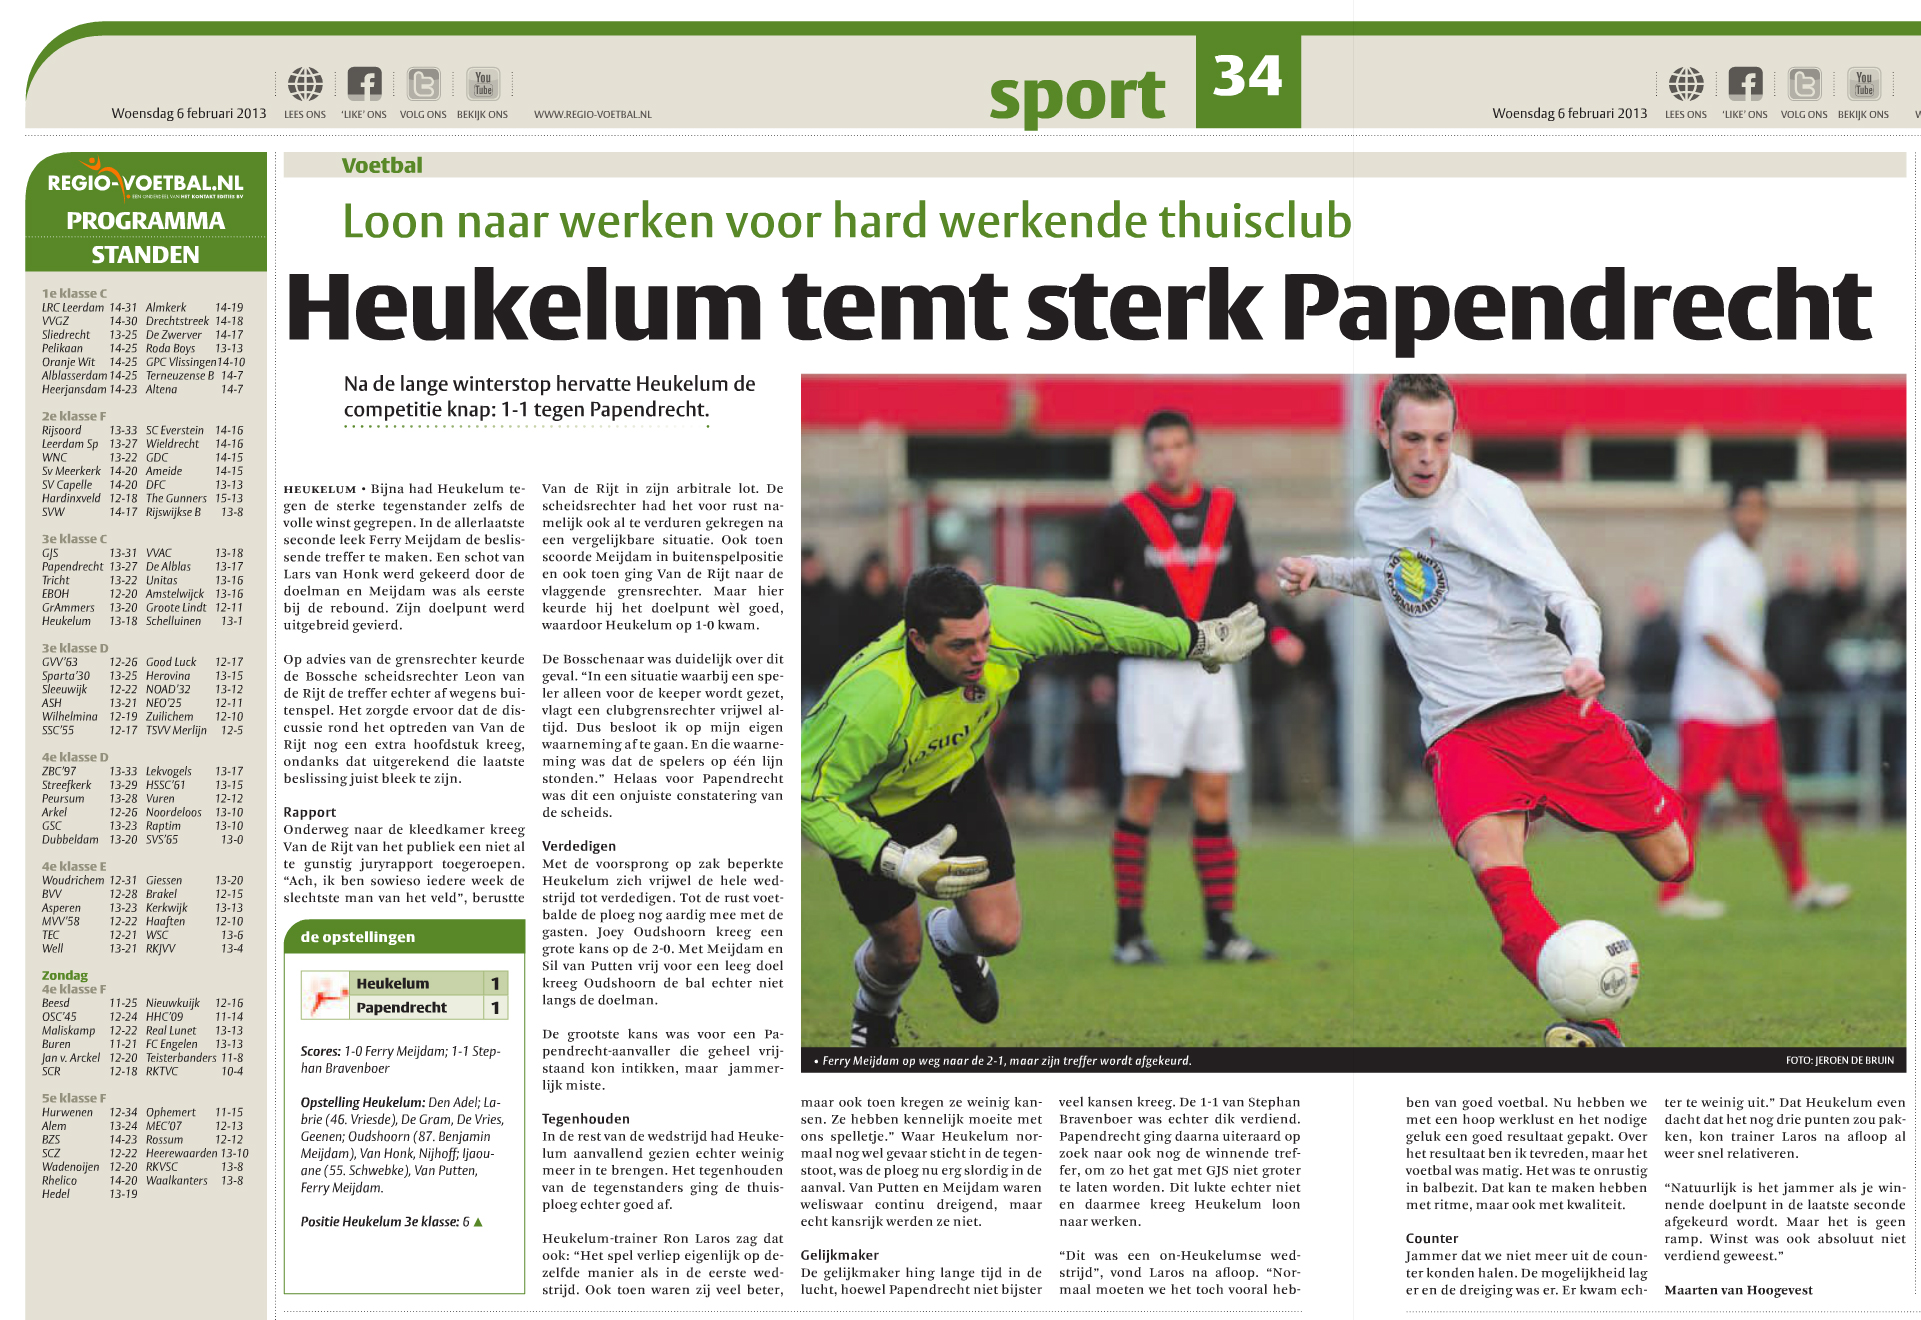 Foto DBRN Fotografie in Het Kontakt editie Leerdam week 06-2013 / Voetbal wedstrijd in de 3e klasse c tussen vv Heukelum en vv Papendrecht. Op de foto de bijna winnende 2-1 van Feryy Meijdam. Enkel deze werd alsnog afgekeurd.